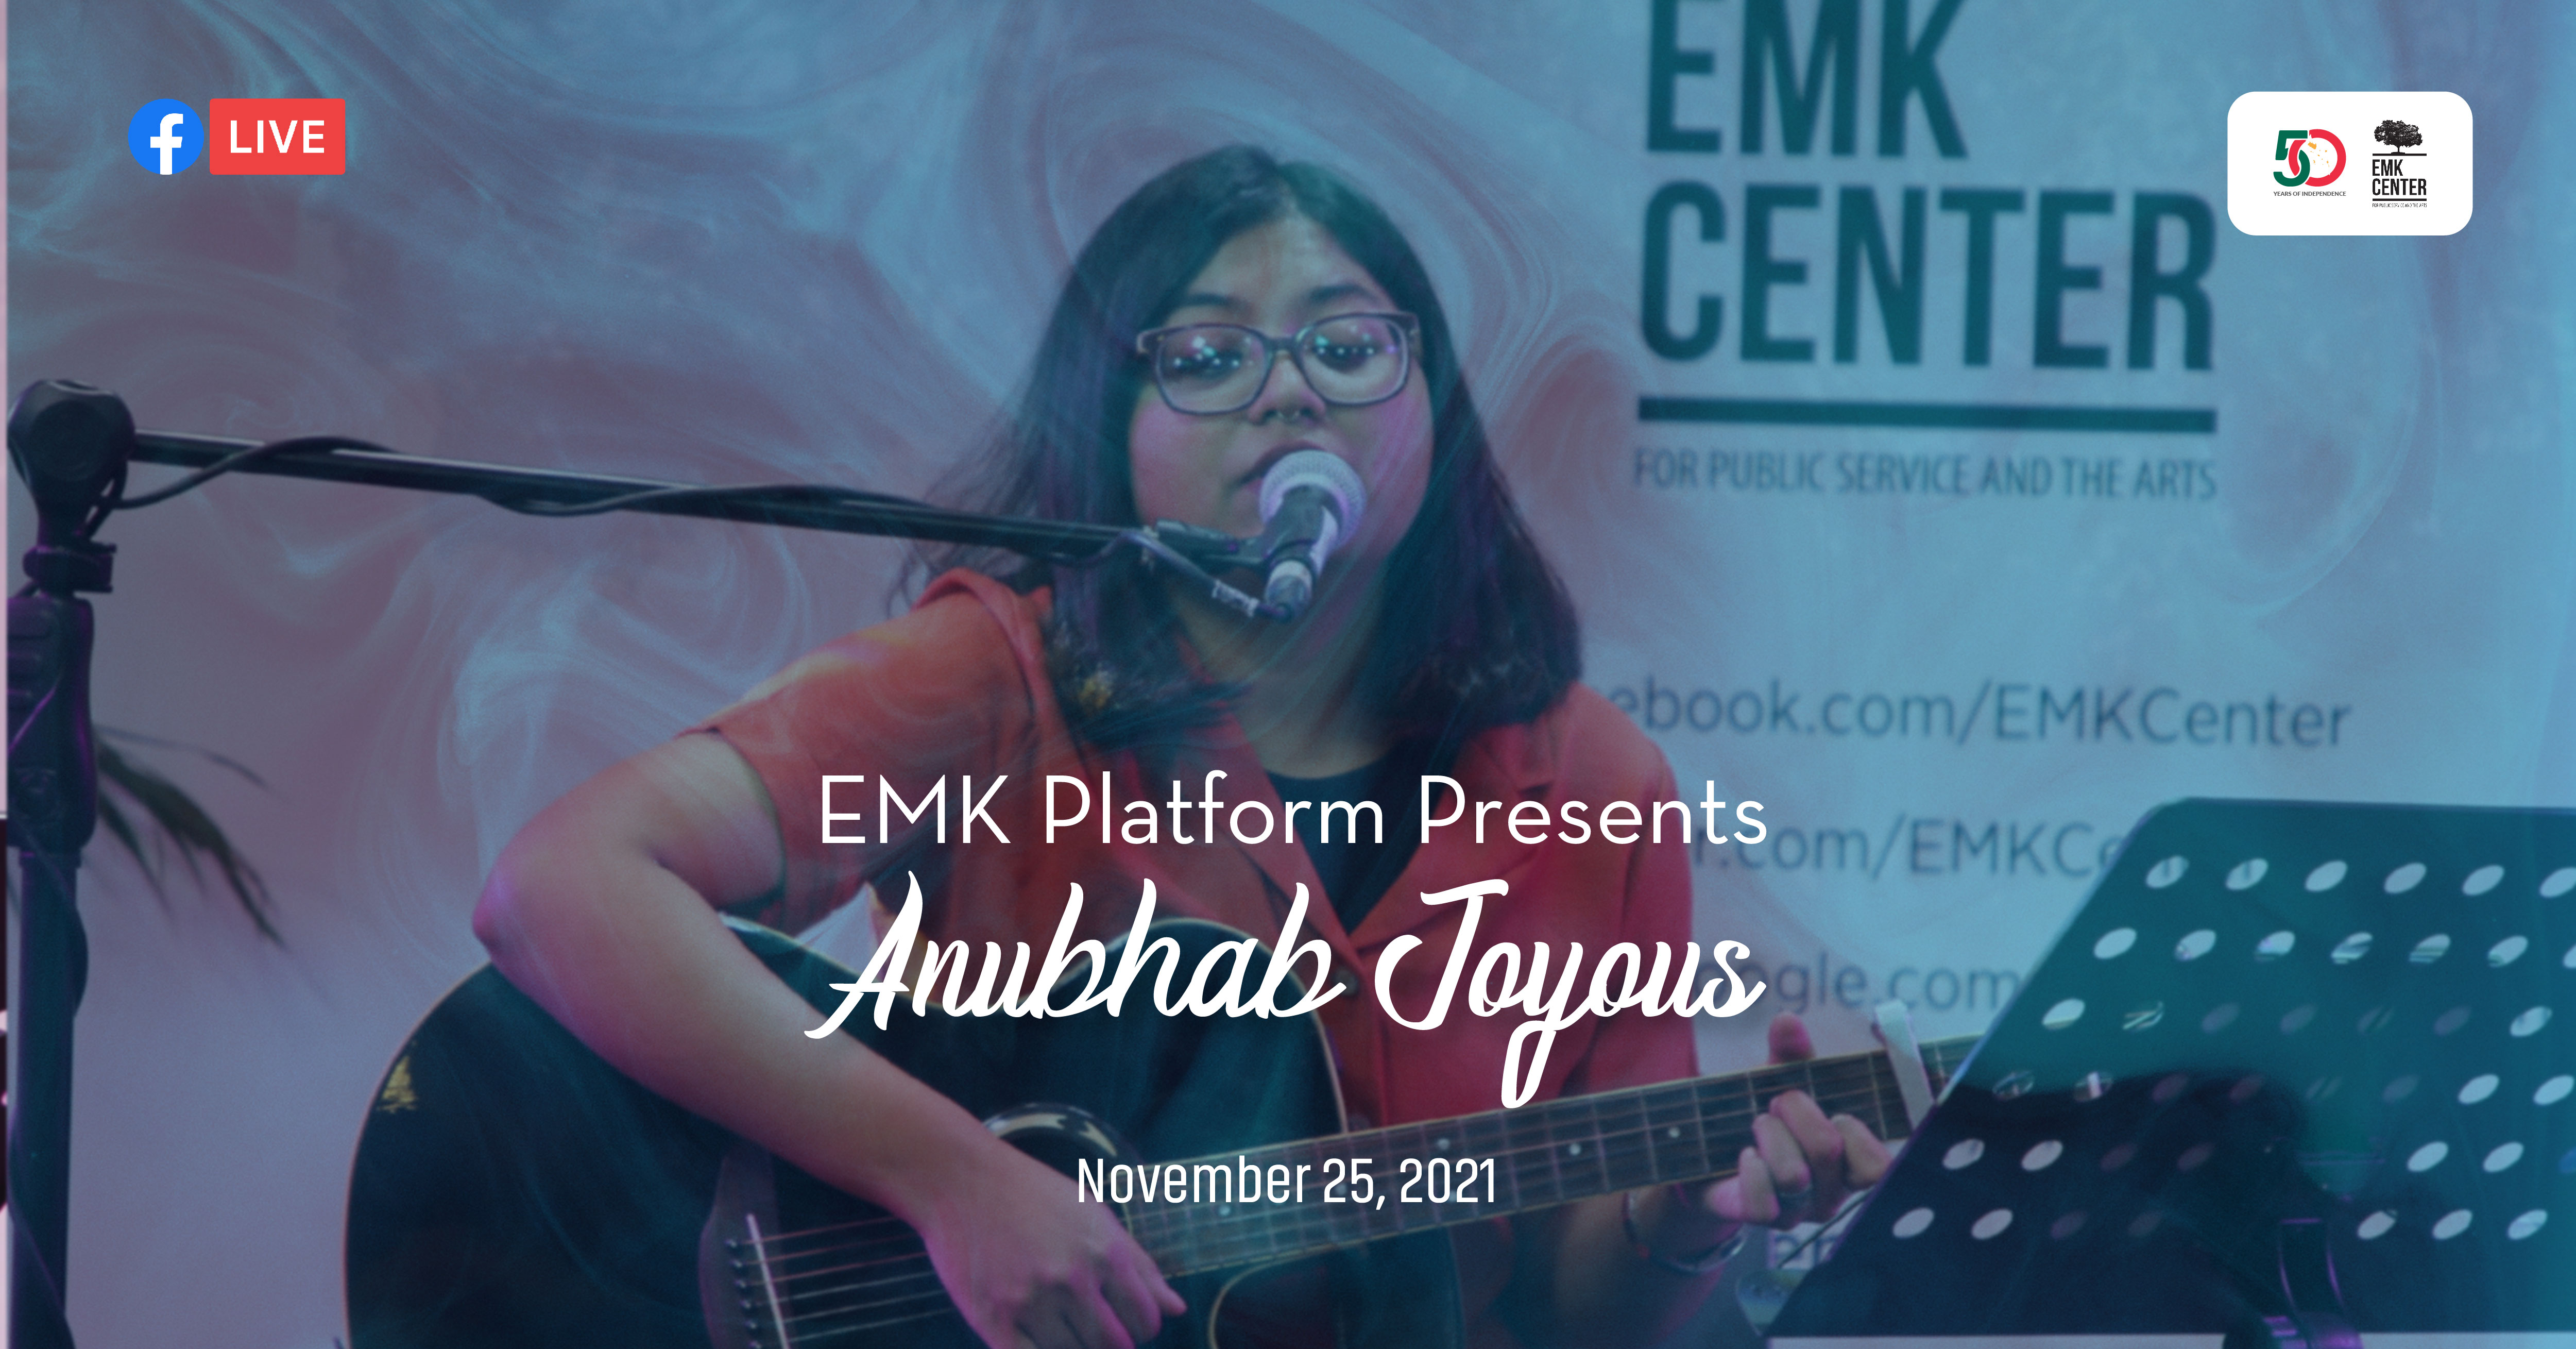 EMK Platform Presents Anubhab Joyous